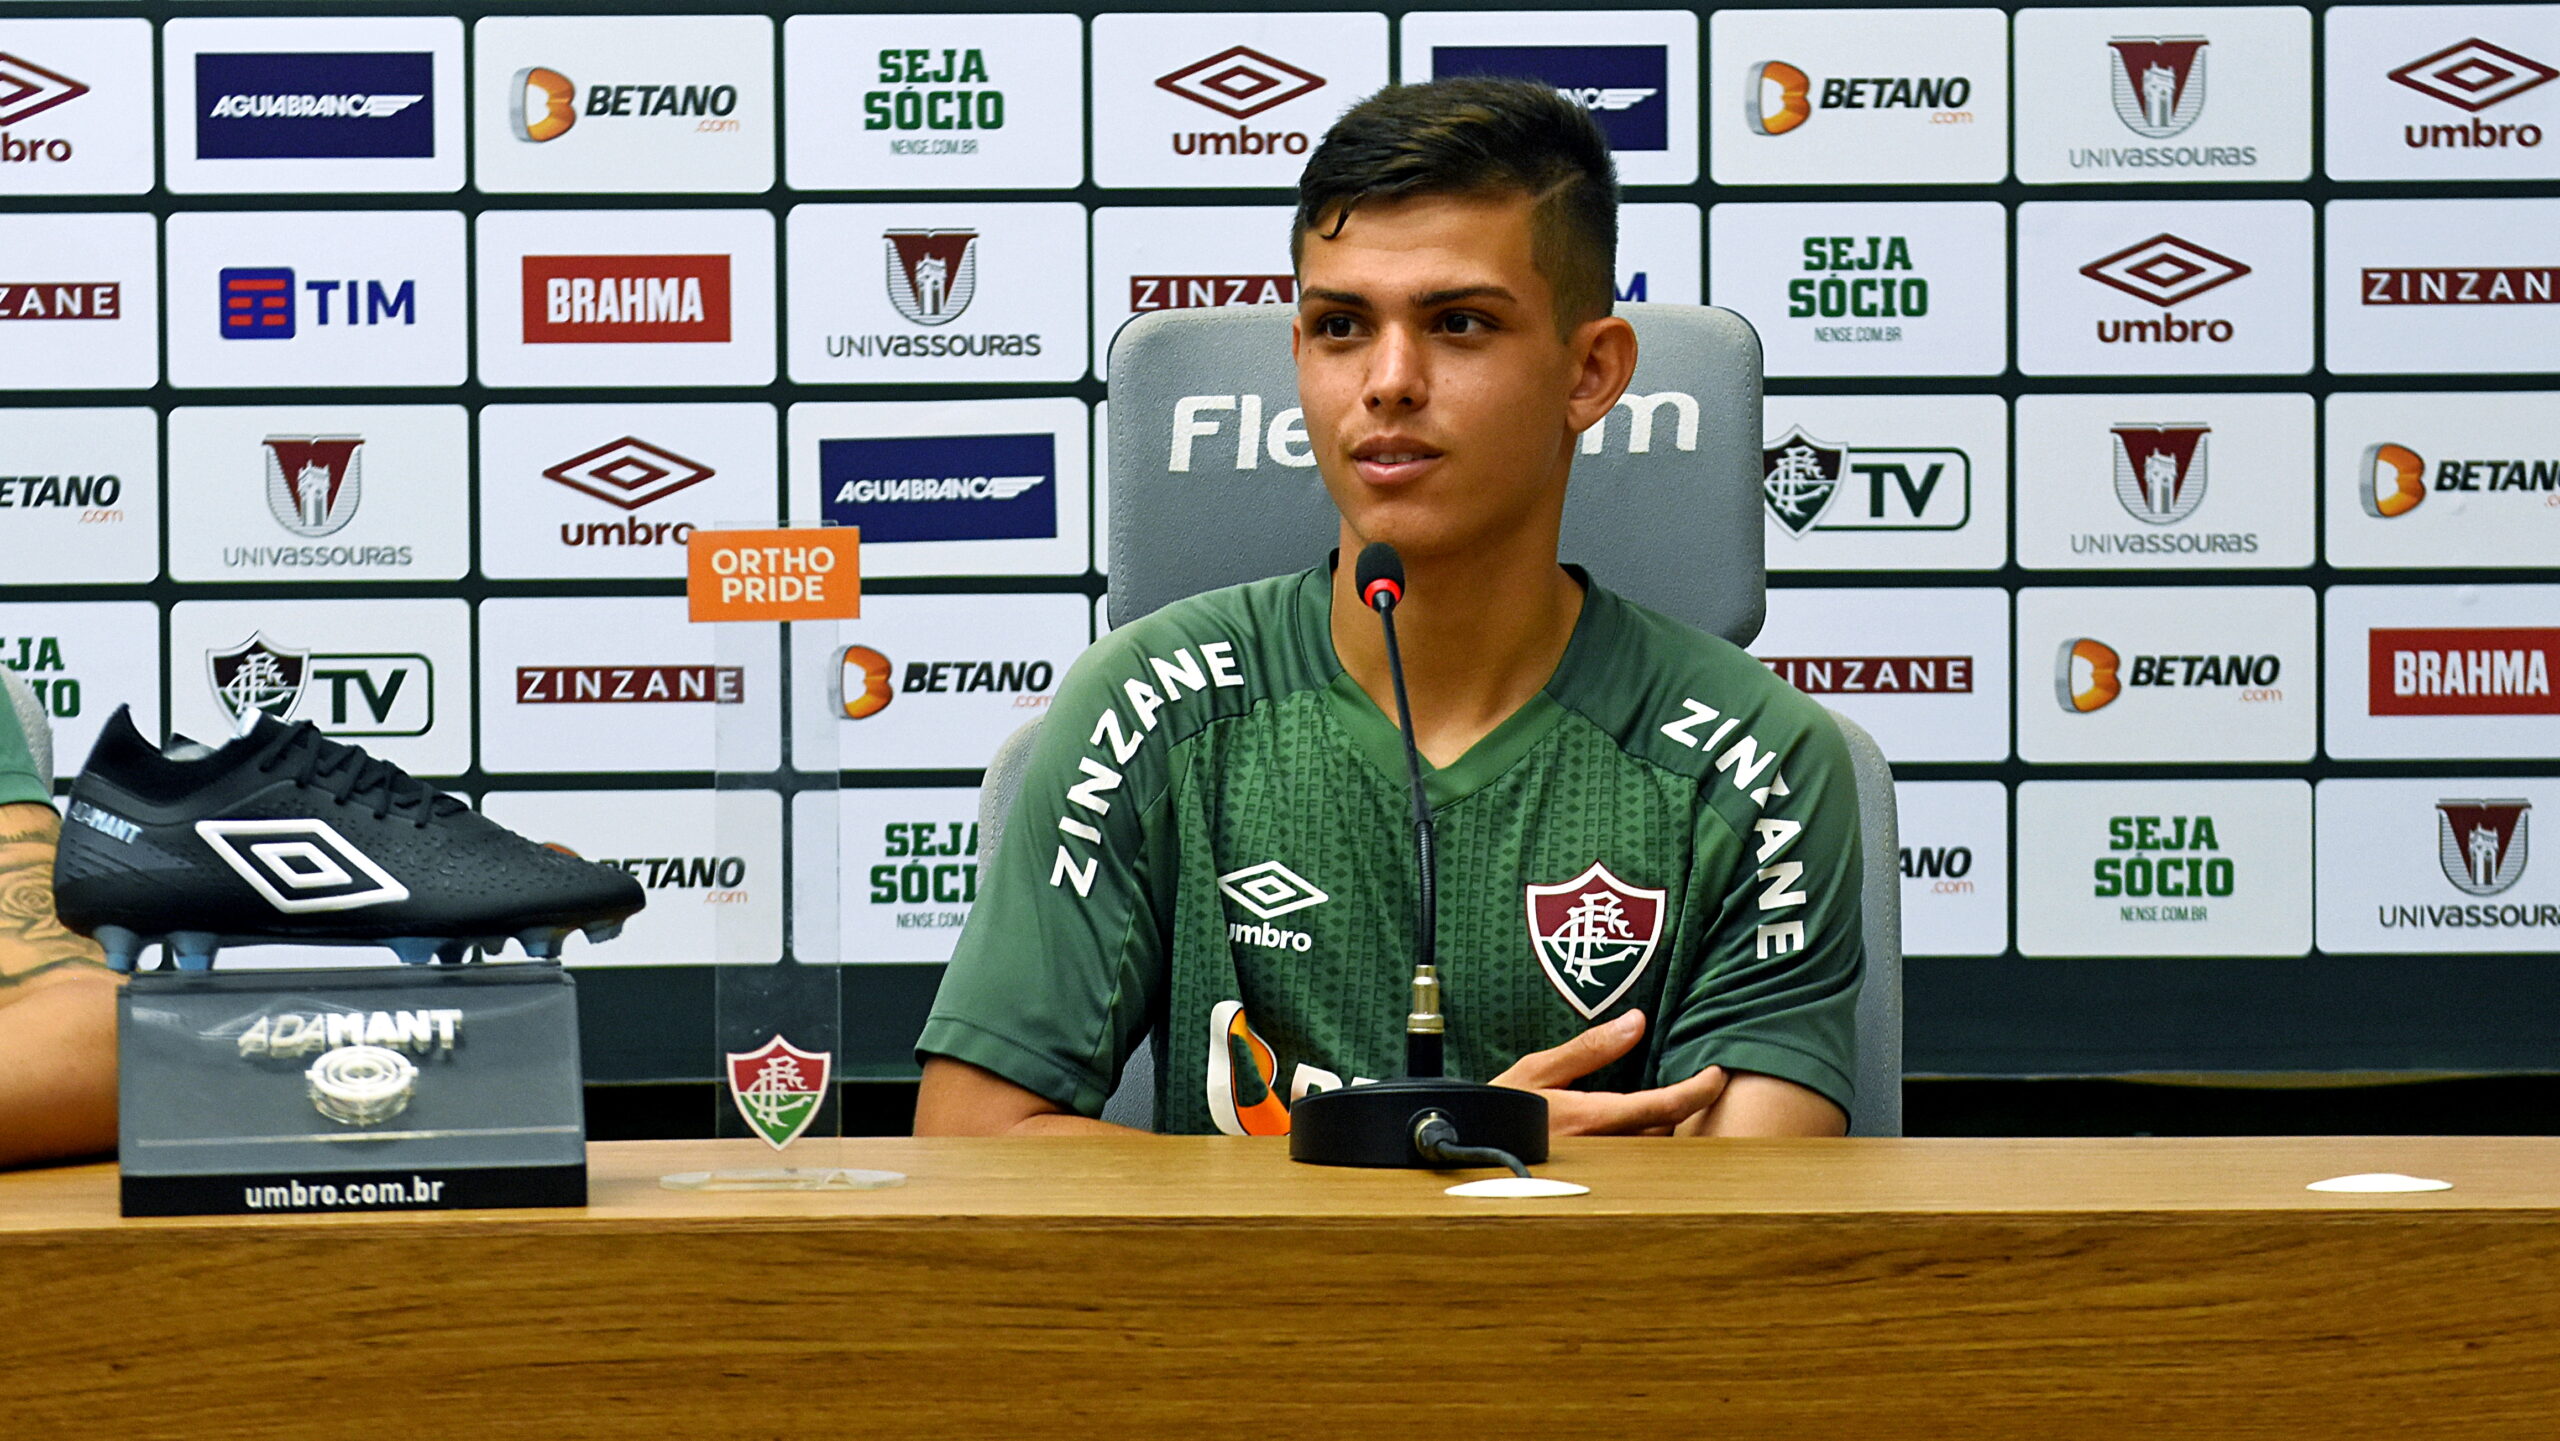 Giovanni fala sobre estreia pelo tricolor e projeta futuro “Tenho certeza que vou dar muita alegria para a torcida do Fluminense” • Saudações Tricolores